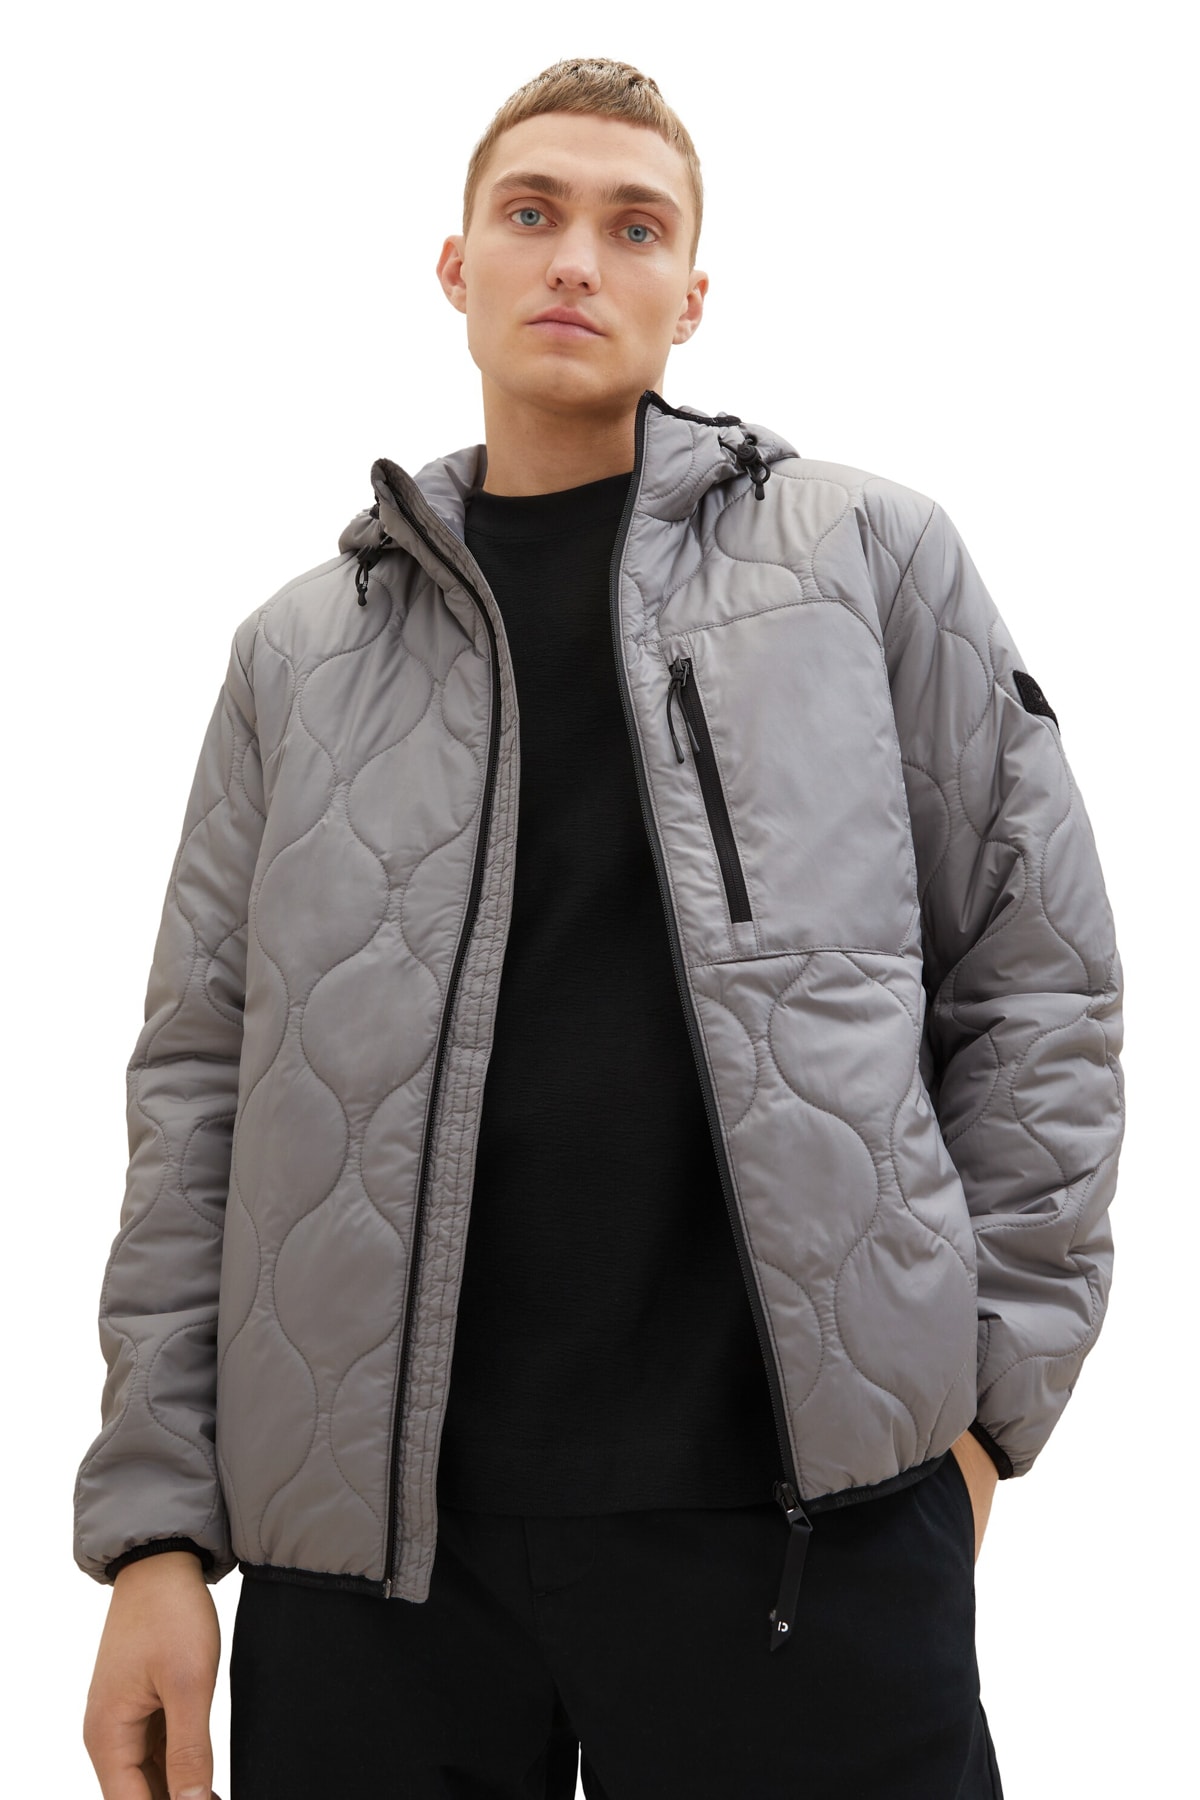 Зимняя куртка - Серая - Пуховик Tom Tailor Denim, серый футболка tom tailor размер l серый